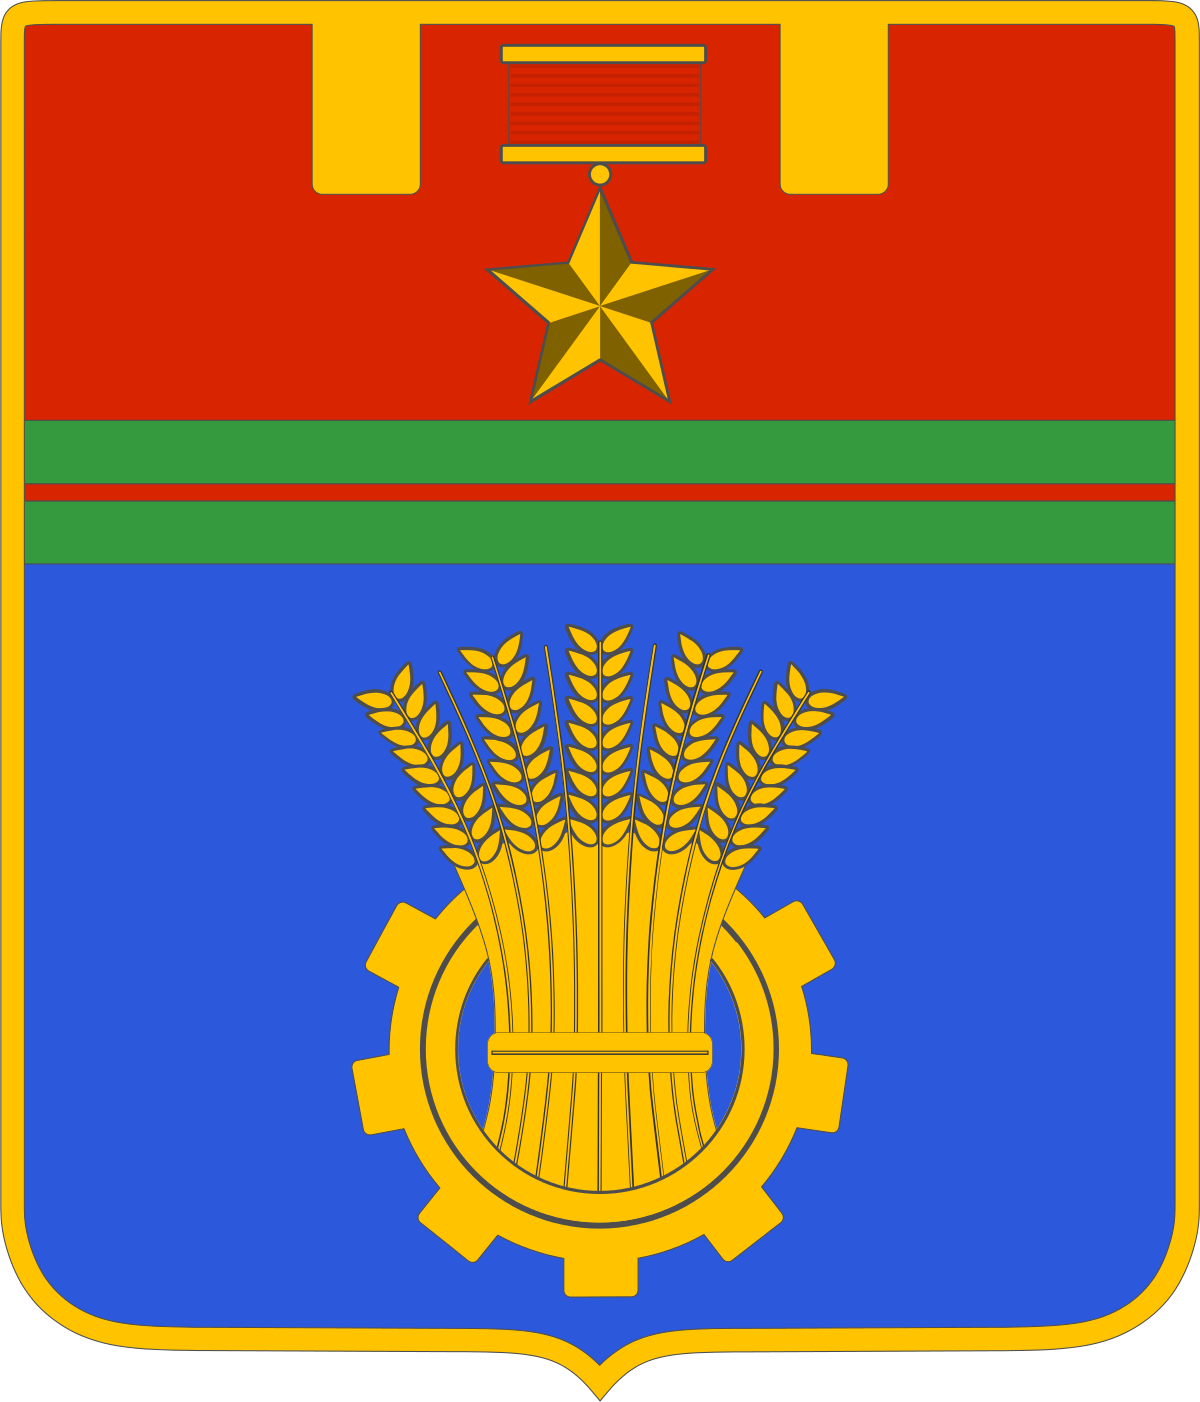 volgograd